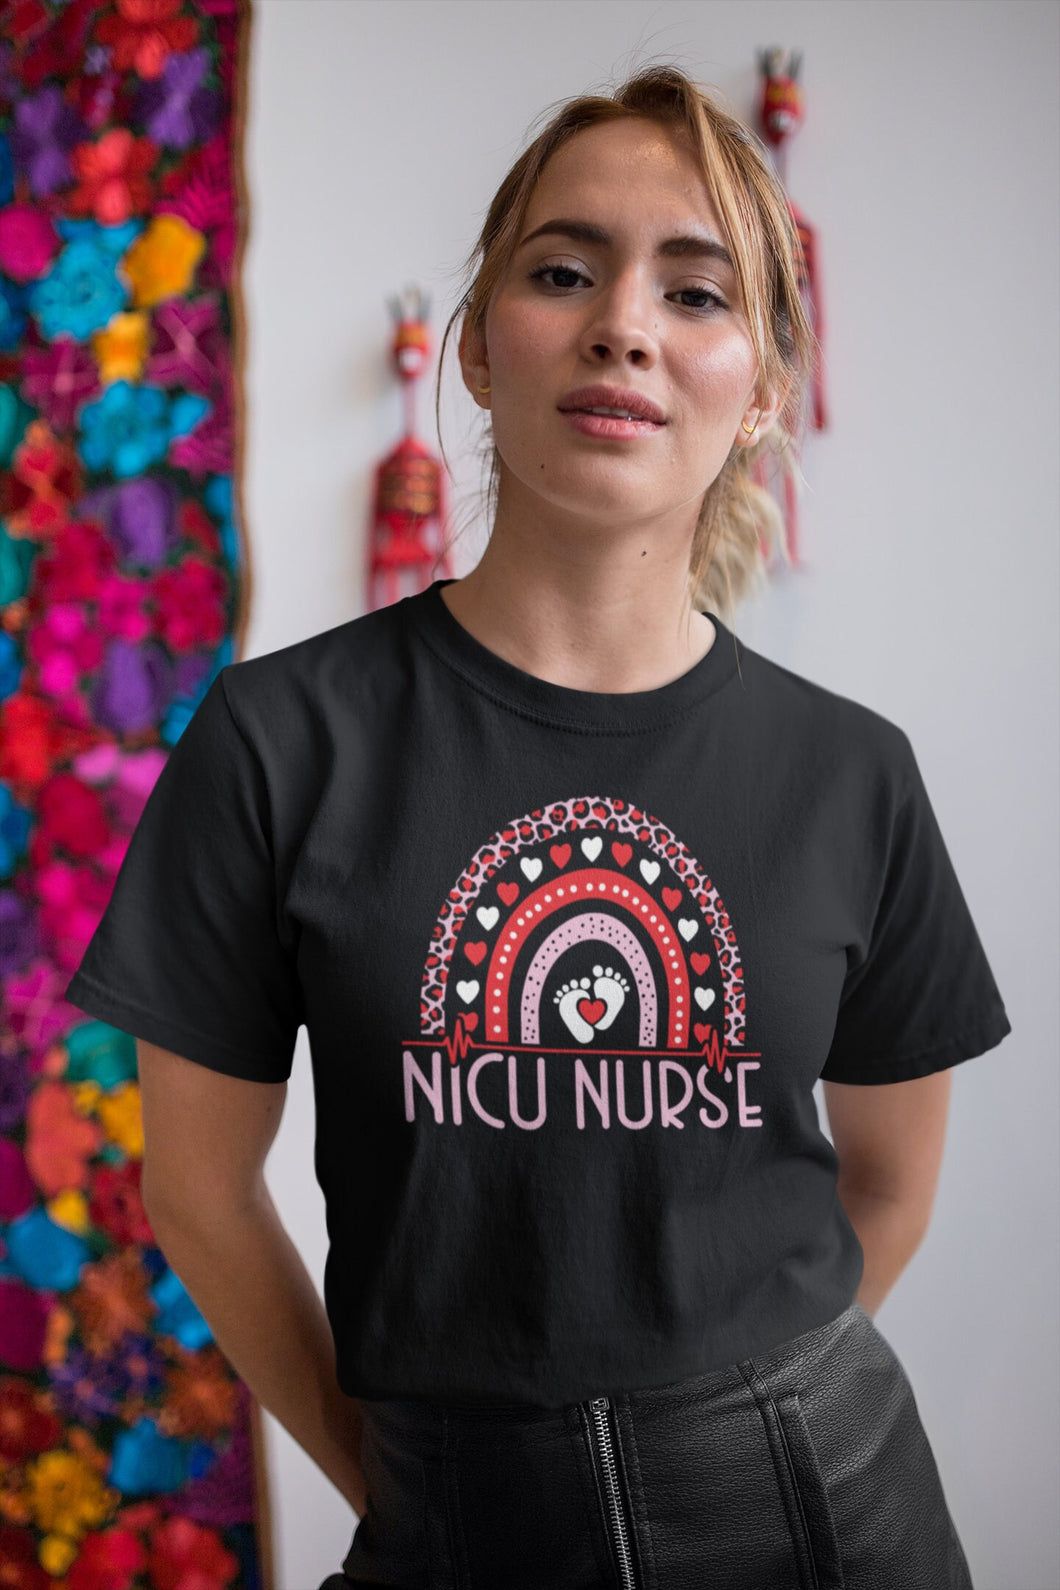 NICU Nurse Shirt, Intensive Care Unit, Nurse Life Gift, Registered Nurse Shirt, Nurse Gift